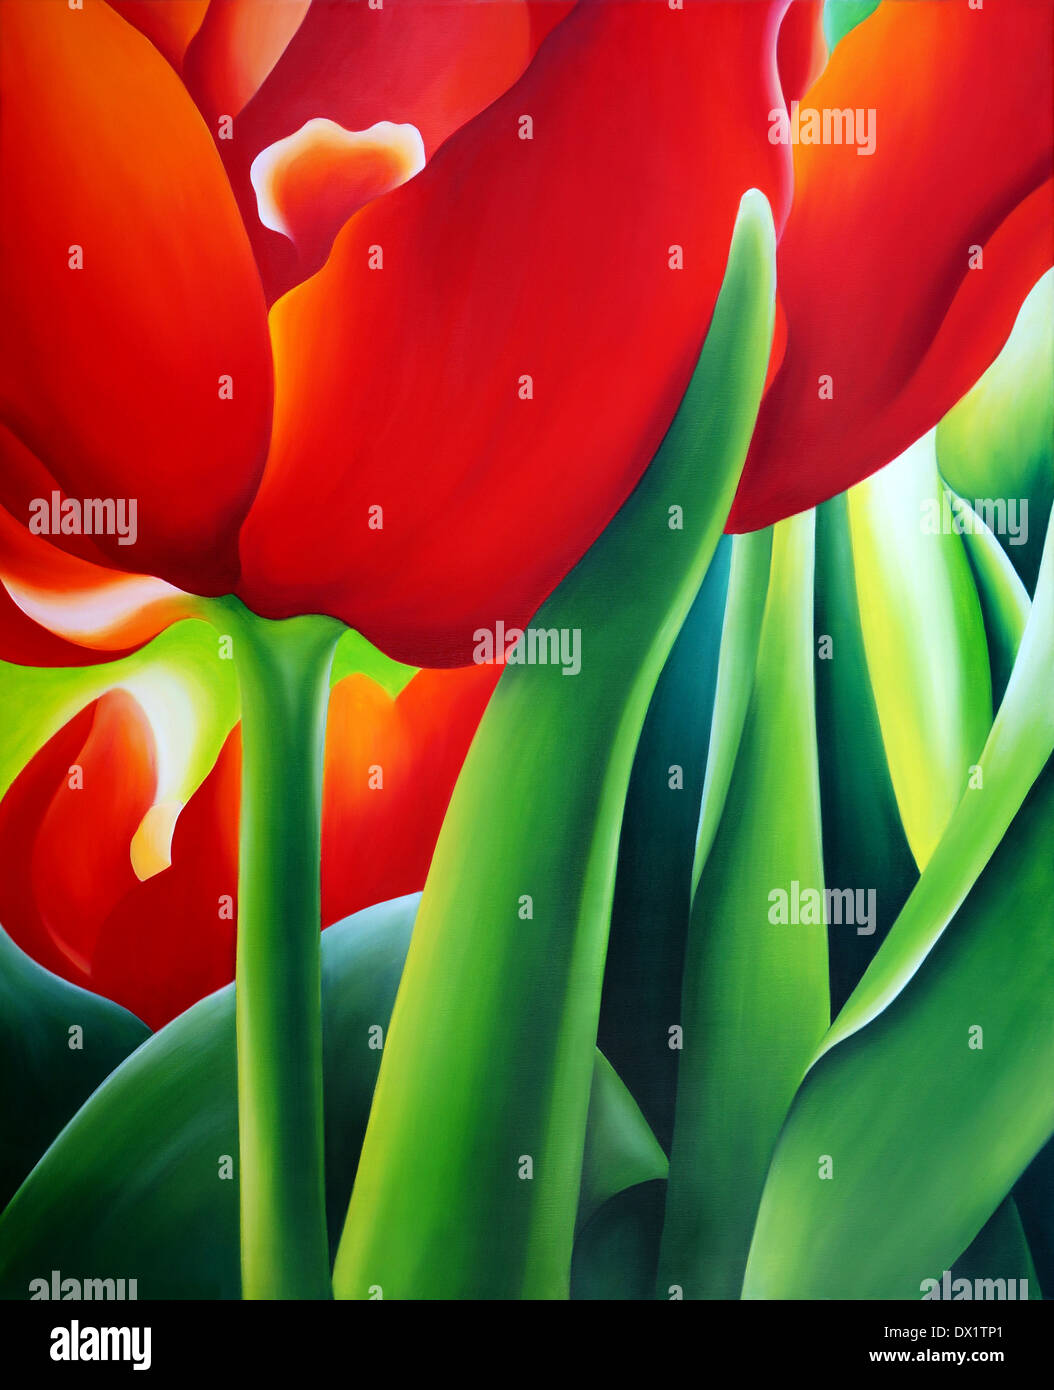 Acryl-Malerei von roten Tulpen Stockfotografie - Alamy